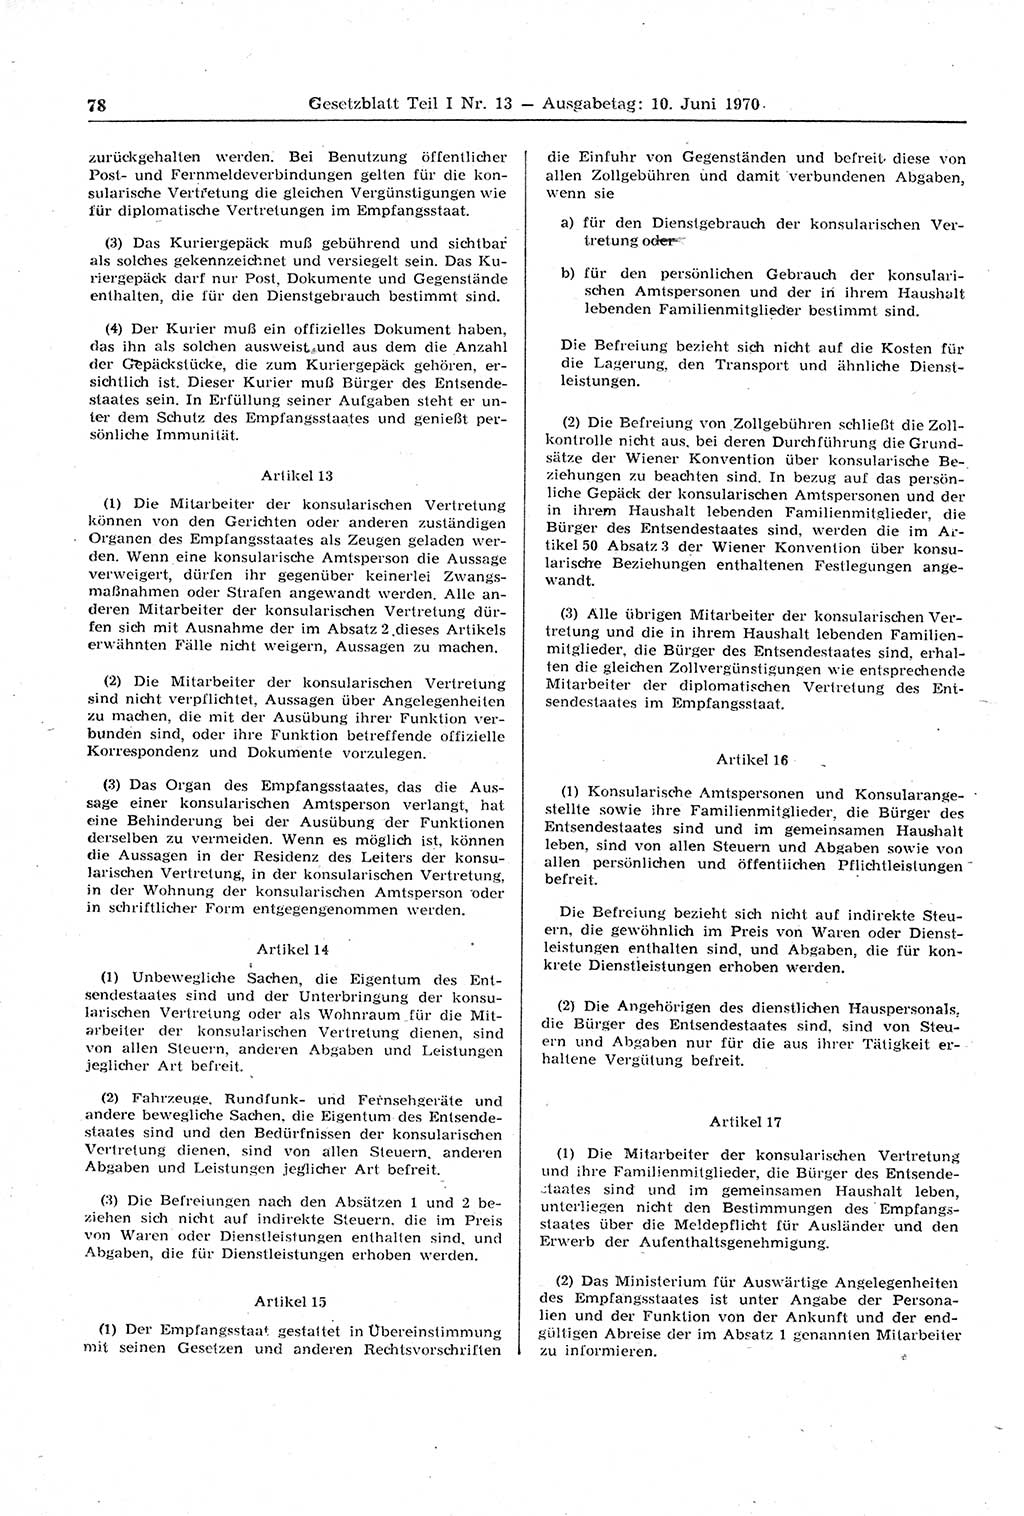 Gesetzblatt (GBl.) der Deutschen Demokratischen Republik (DDR) Teil Ⅰ 1970, Seite 78 (GBl. DDR Ⅰ 1970, S. 78)